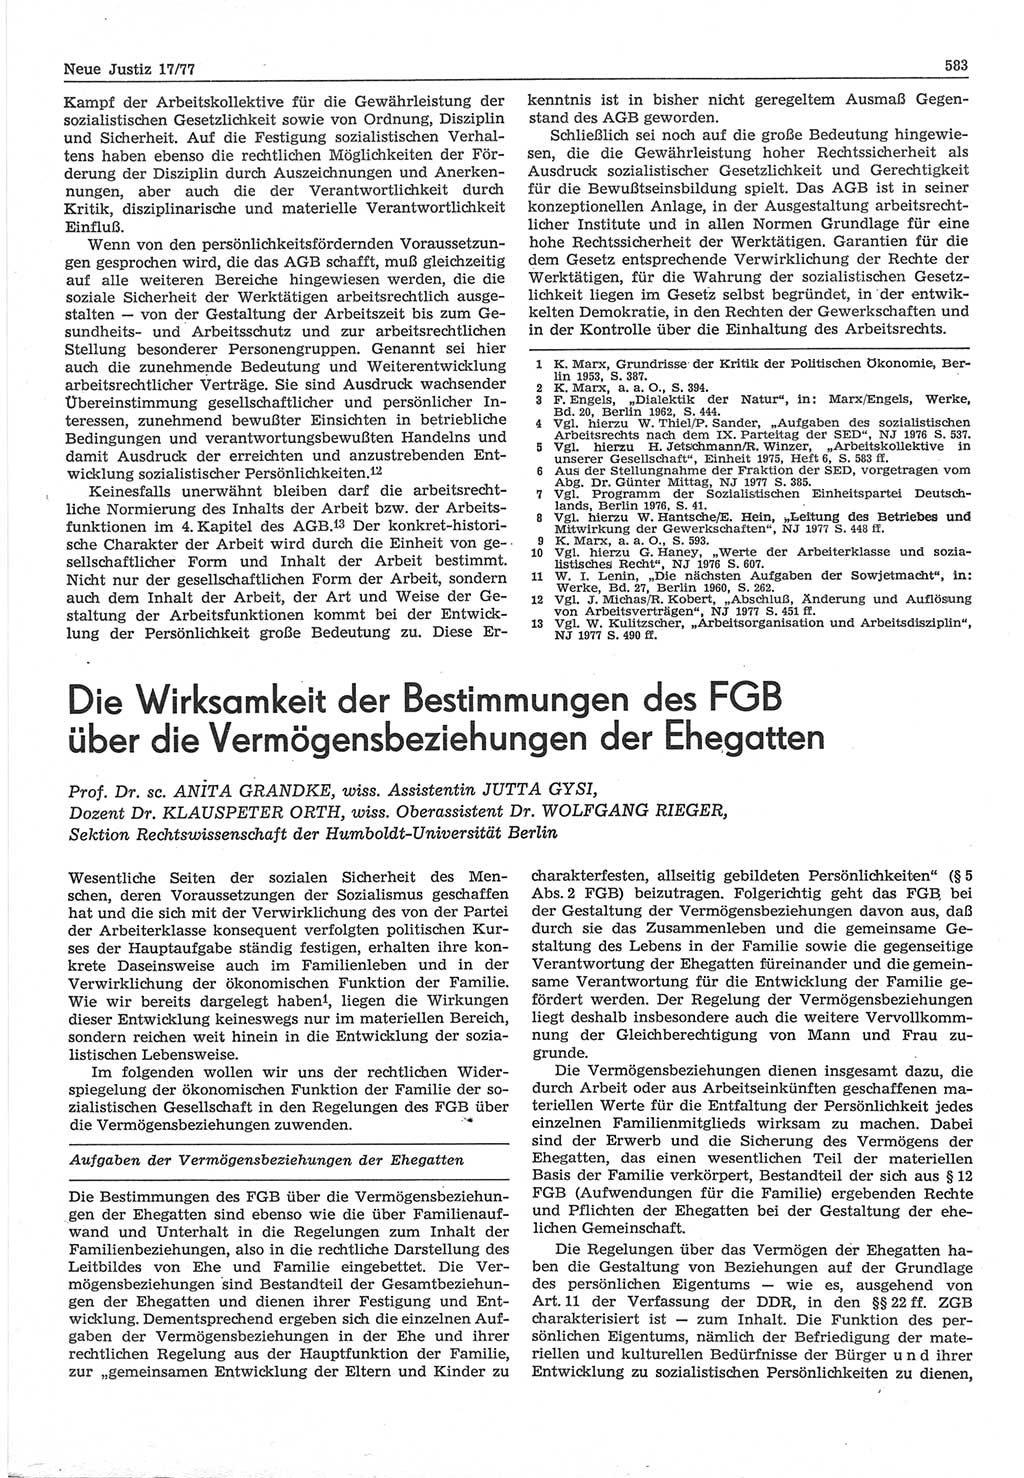 Neue Justiz (NJ), Zeitschrift für Recht und Rechtswissenschaft-Zeitschrift, sozialistisches Recht und Gesetzlichkeit, 31. Jahrgang 1977, Seite 583 (NJ DDR 1977, S. 583)